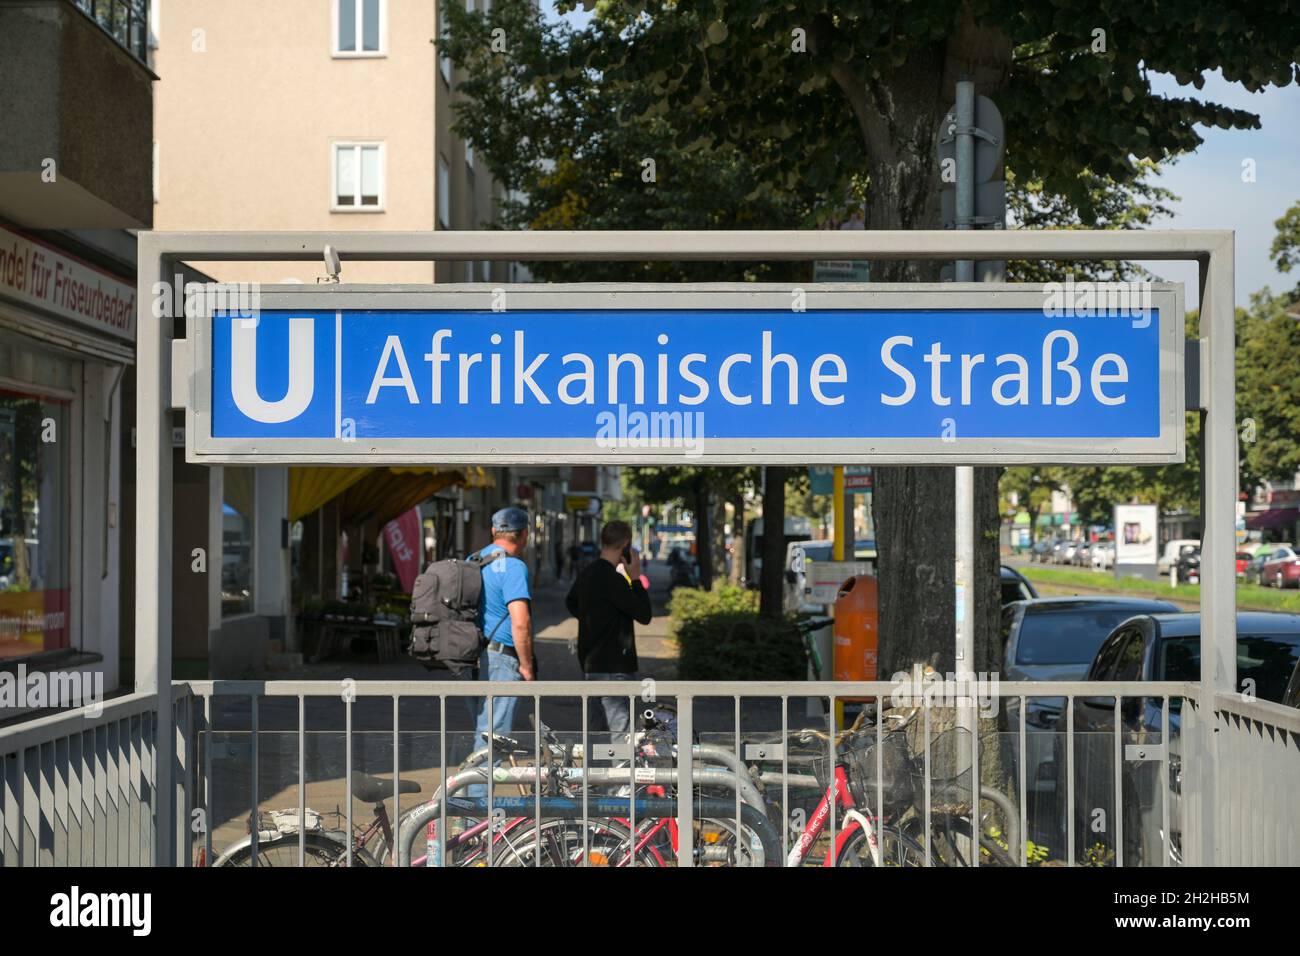 U-Bahnhof Afrikanische Straße, Wedding, Mitte, Berlin, Deutschland Stock Photo